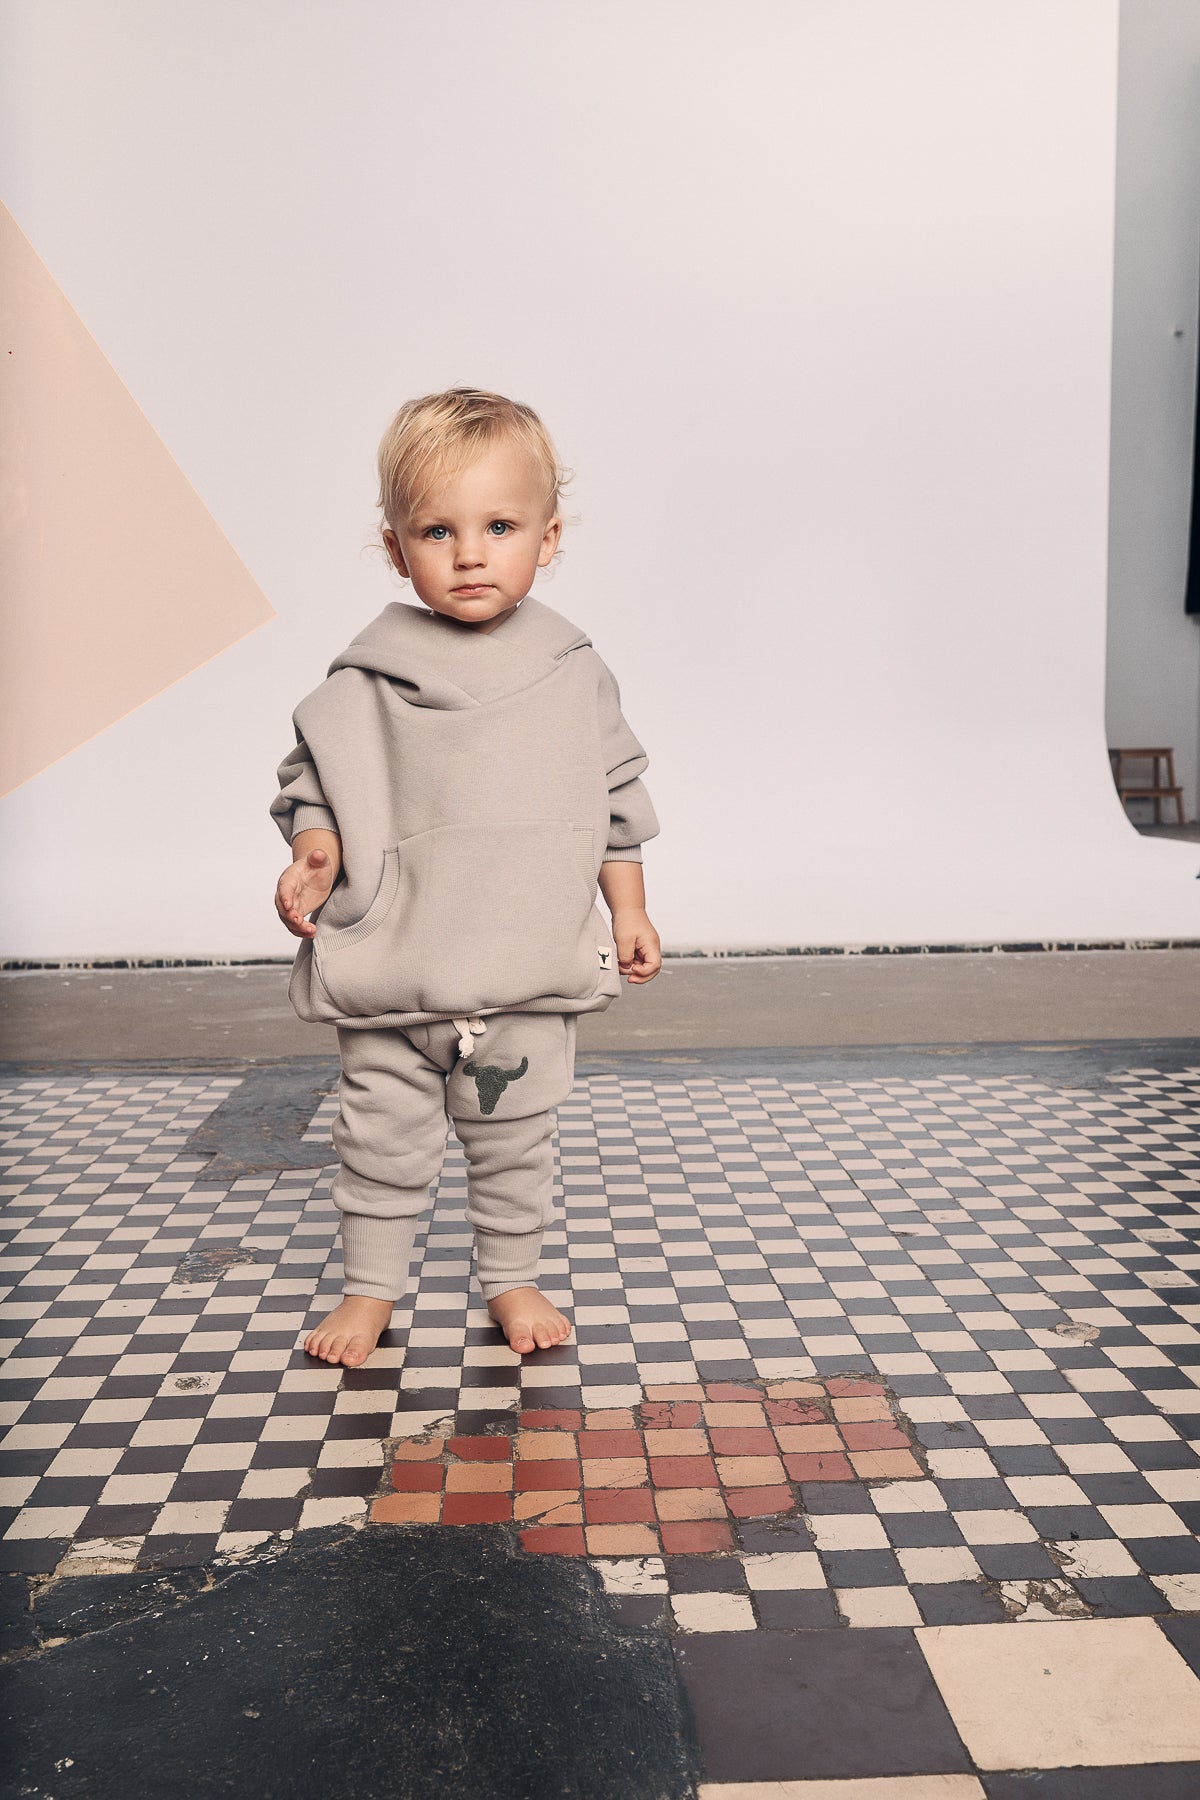 spodnie dziecięce -  WARM PANTS gray